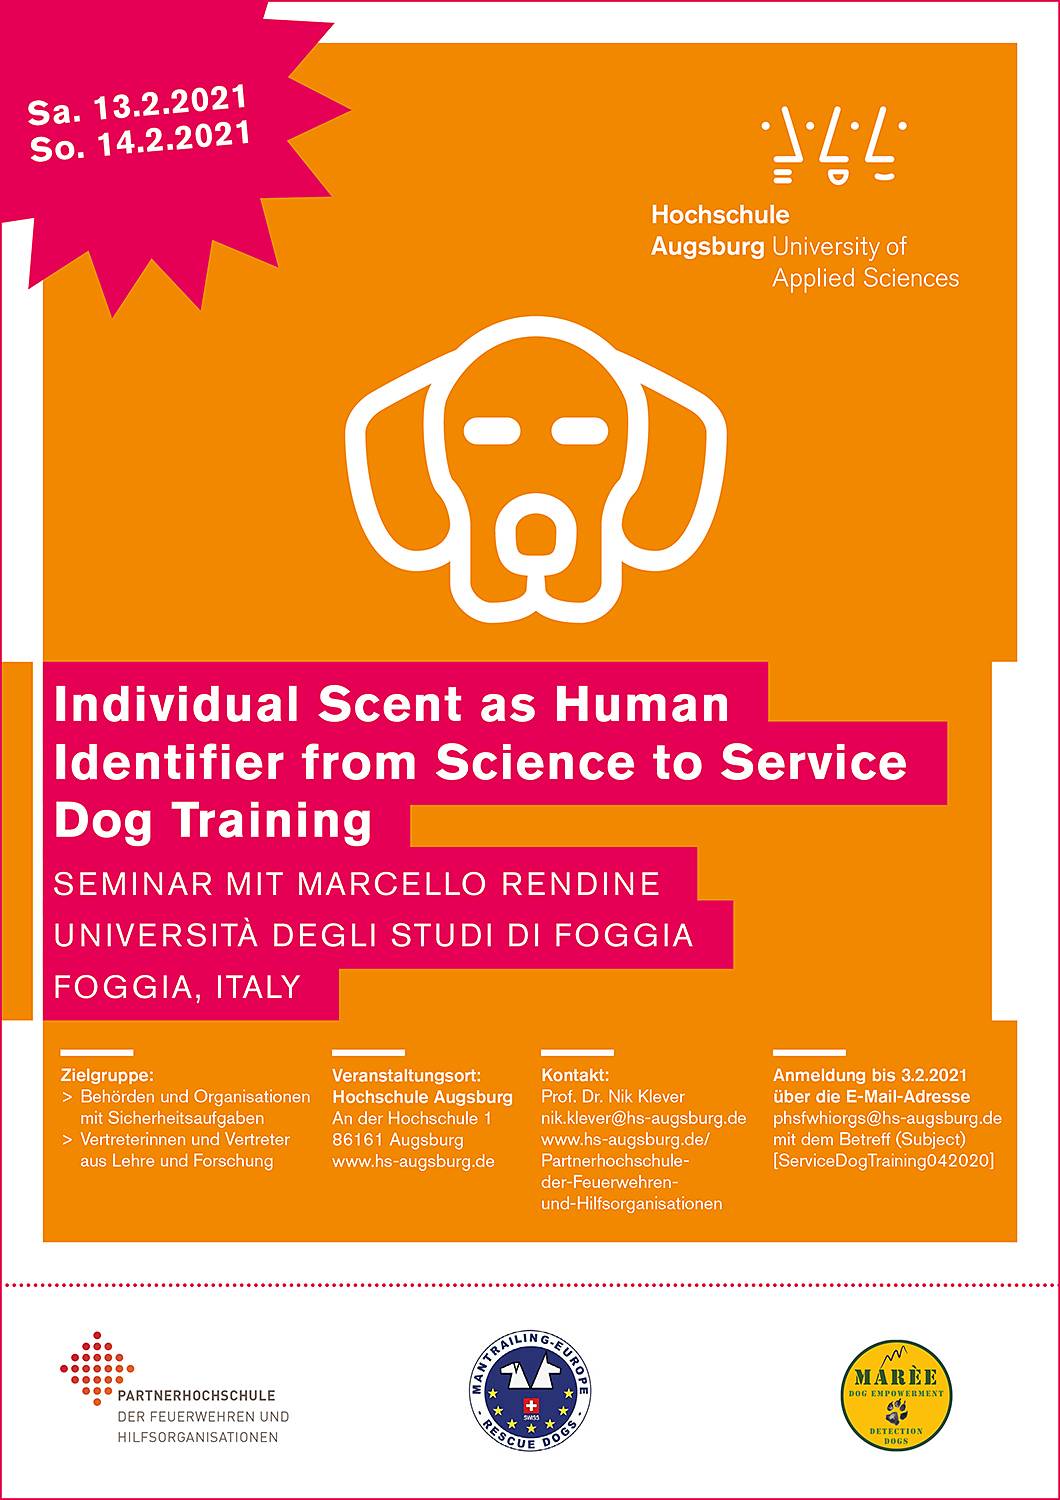 Individual Scent as Human Identifier from Science to Service Dog Training  Seminar mit Marcello Rendine Università degli studi di Foggia Foggia, Italy